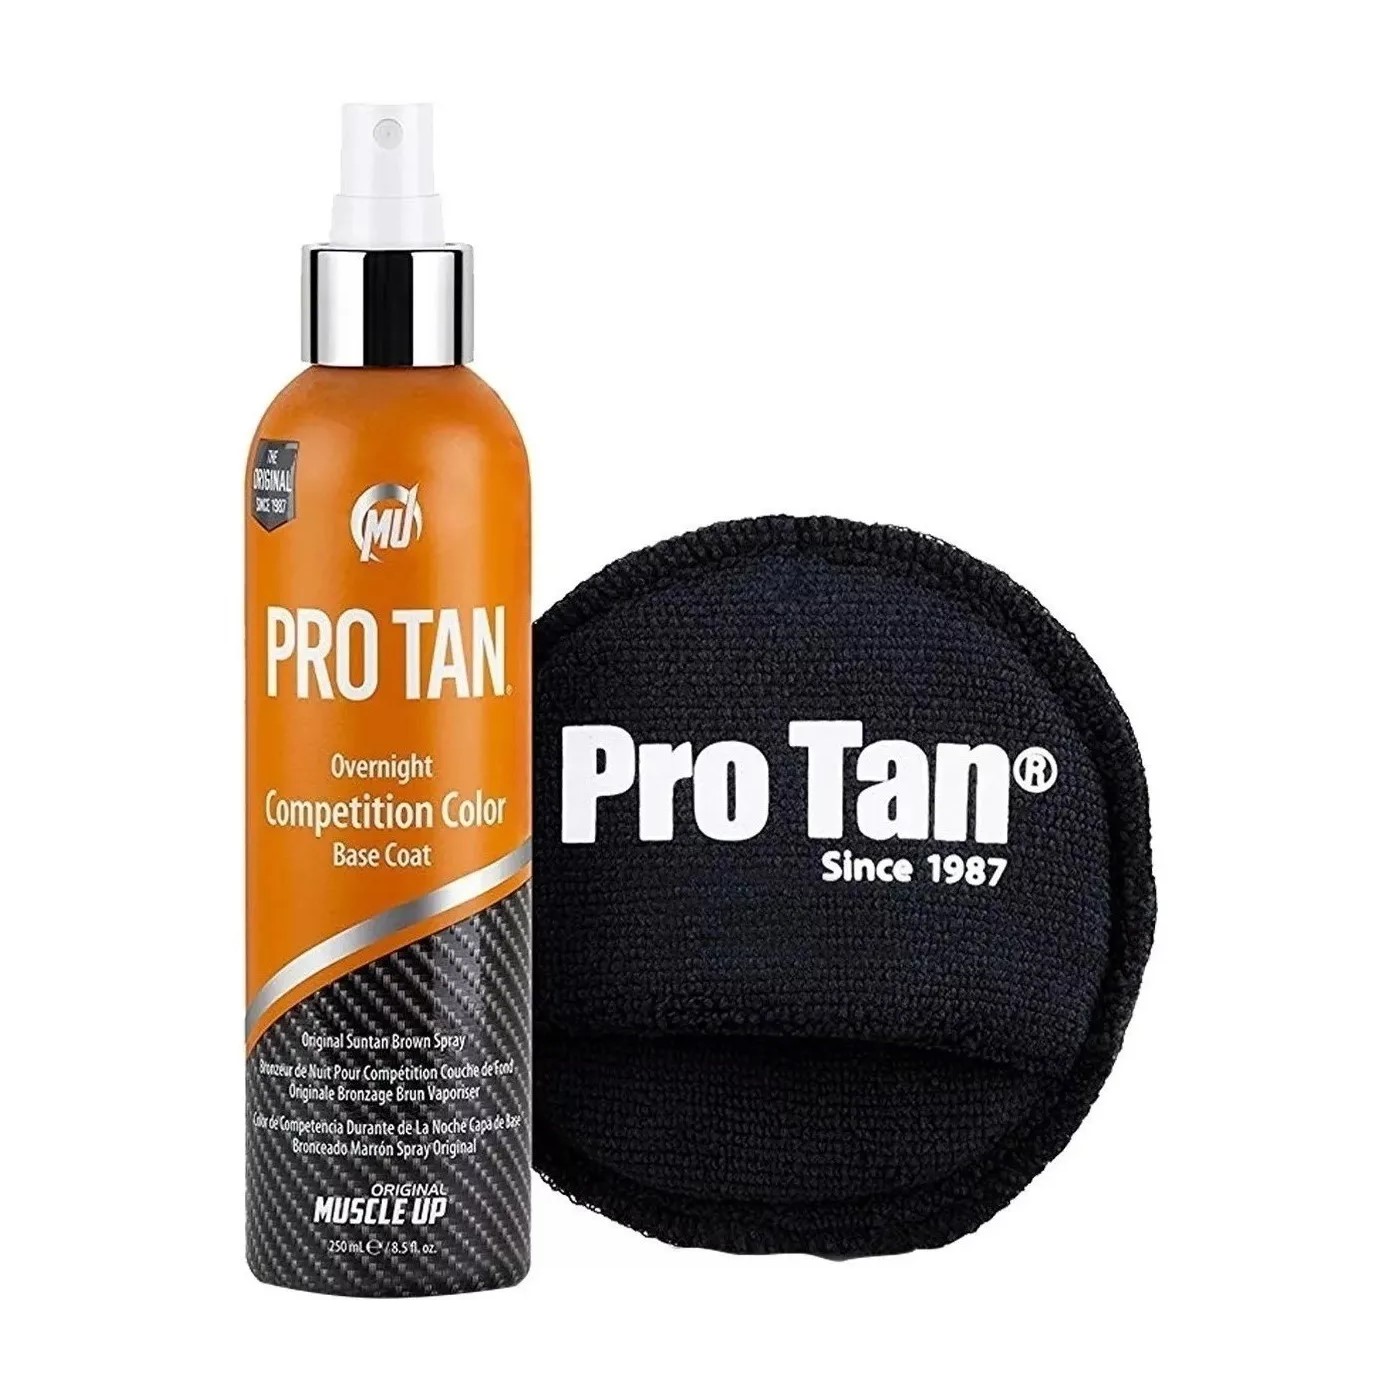 Pro Tan – Overnight Competition Color 8.5oz Bronceador para Competencias